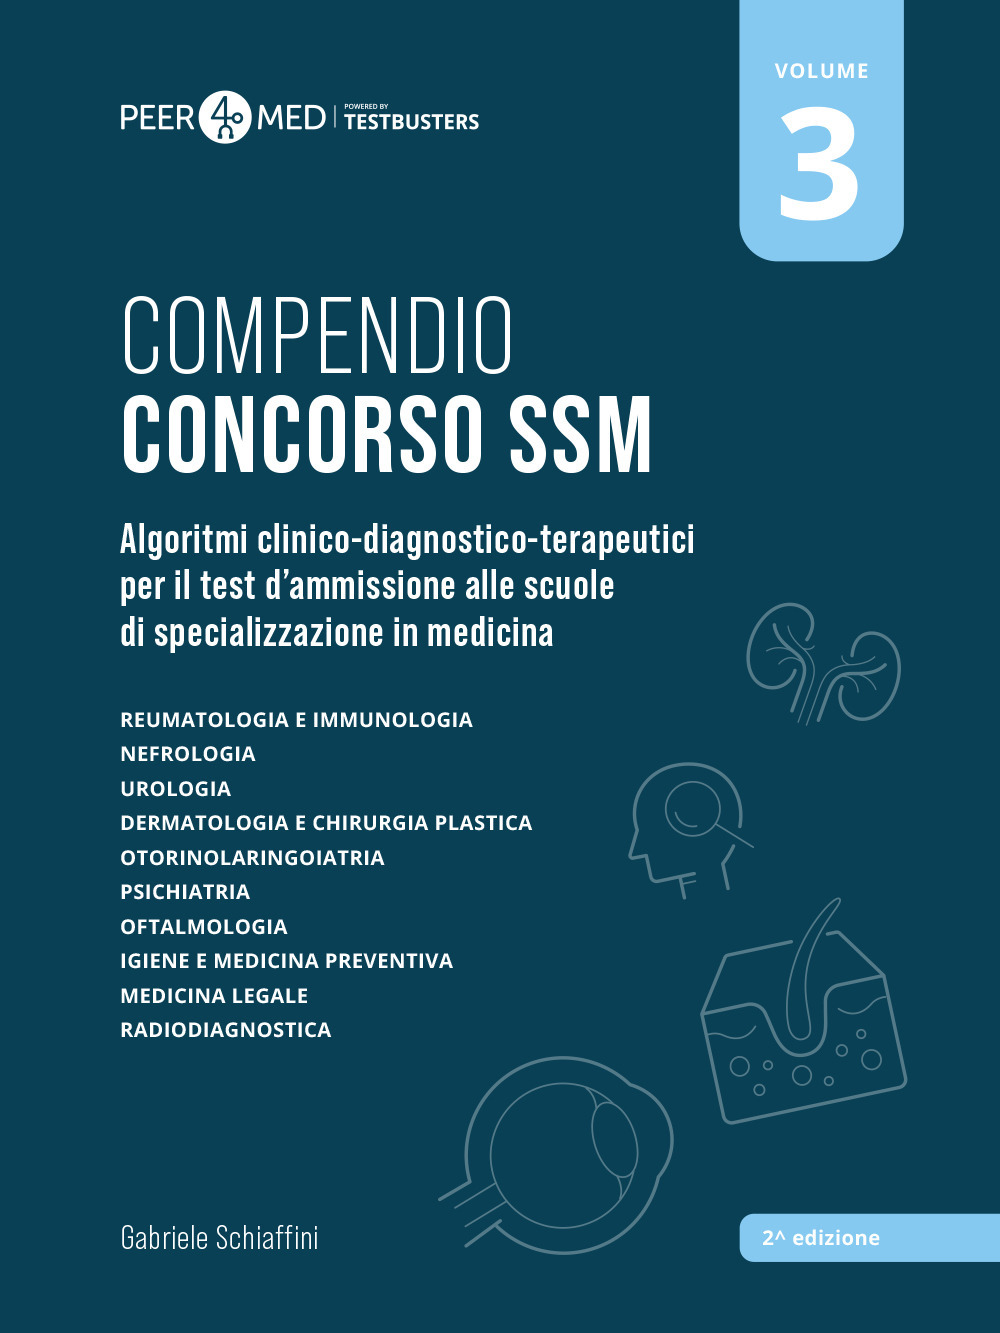 Peer4Med. Compendio Concorso SSM. Vol. 3: Algoritmi clinico-diagnostico-terapeutici per il test d'ammissione alle scuole di specializzazione in medicina